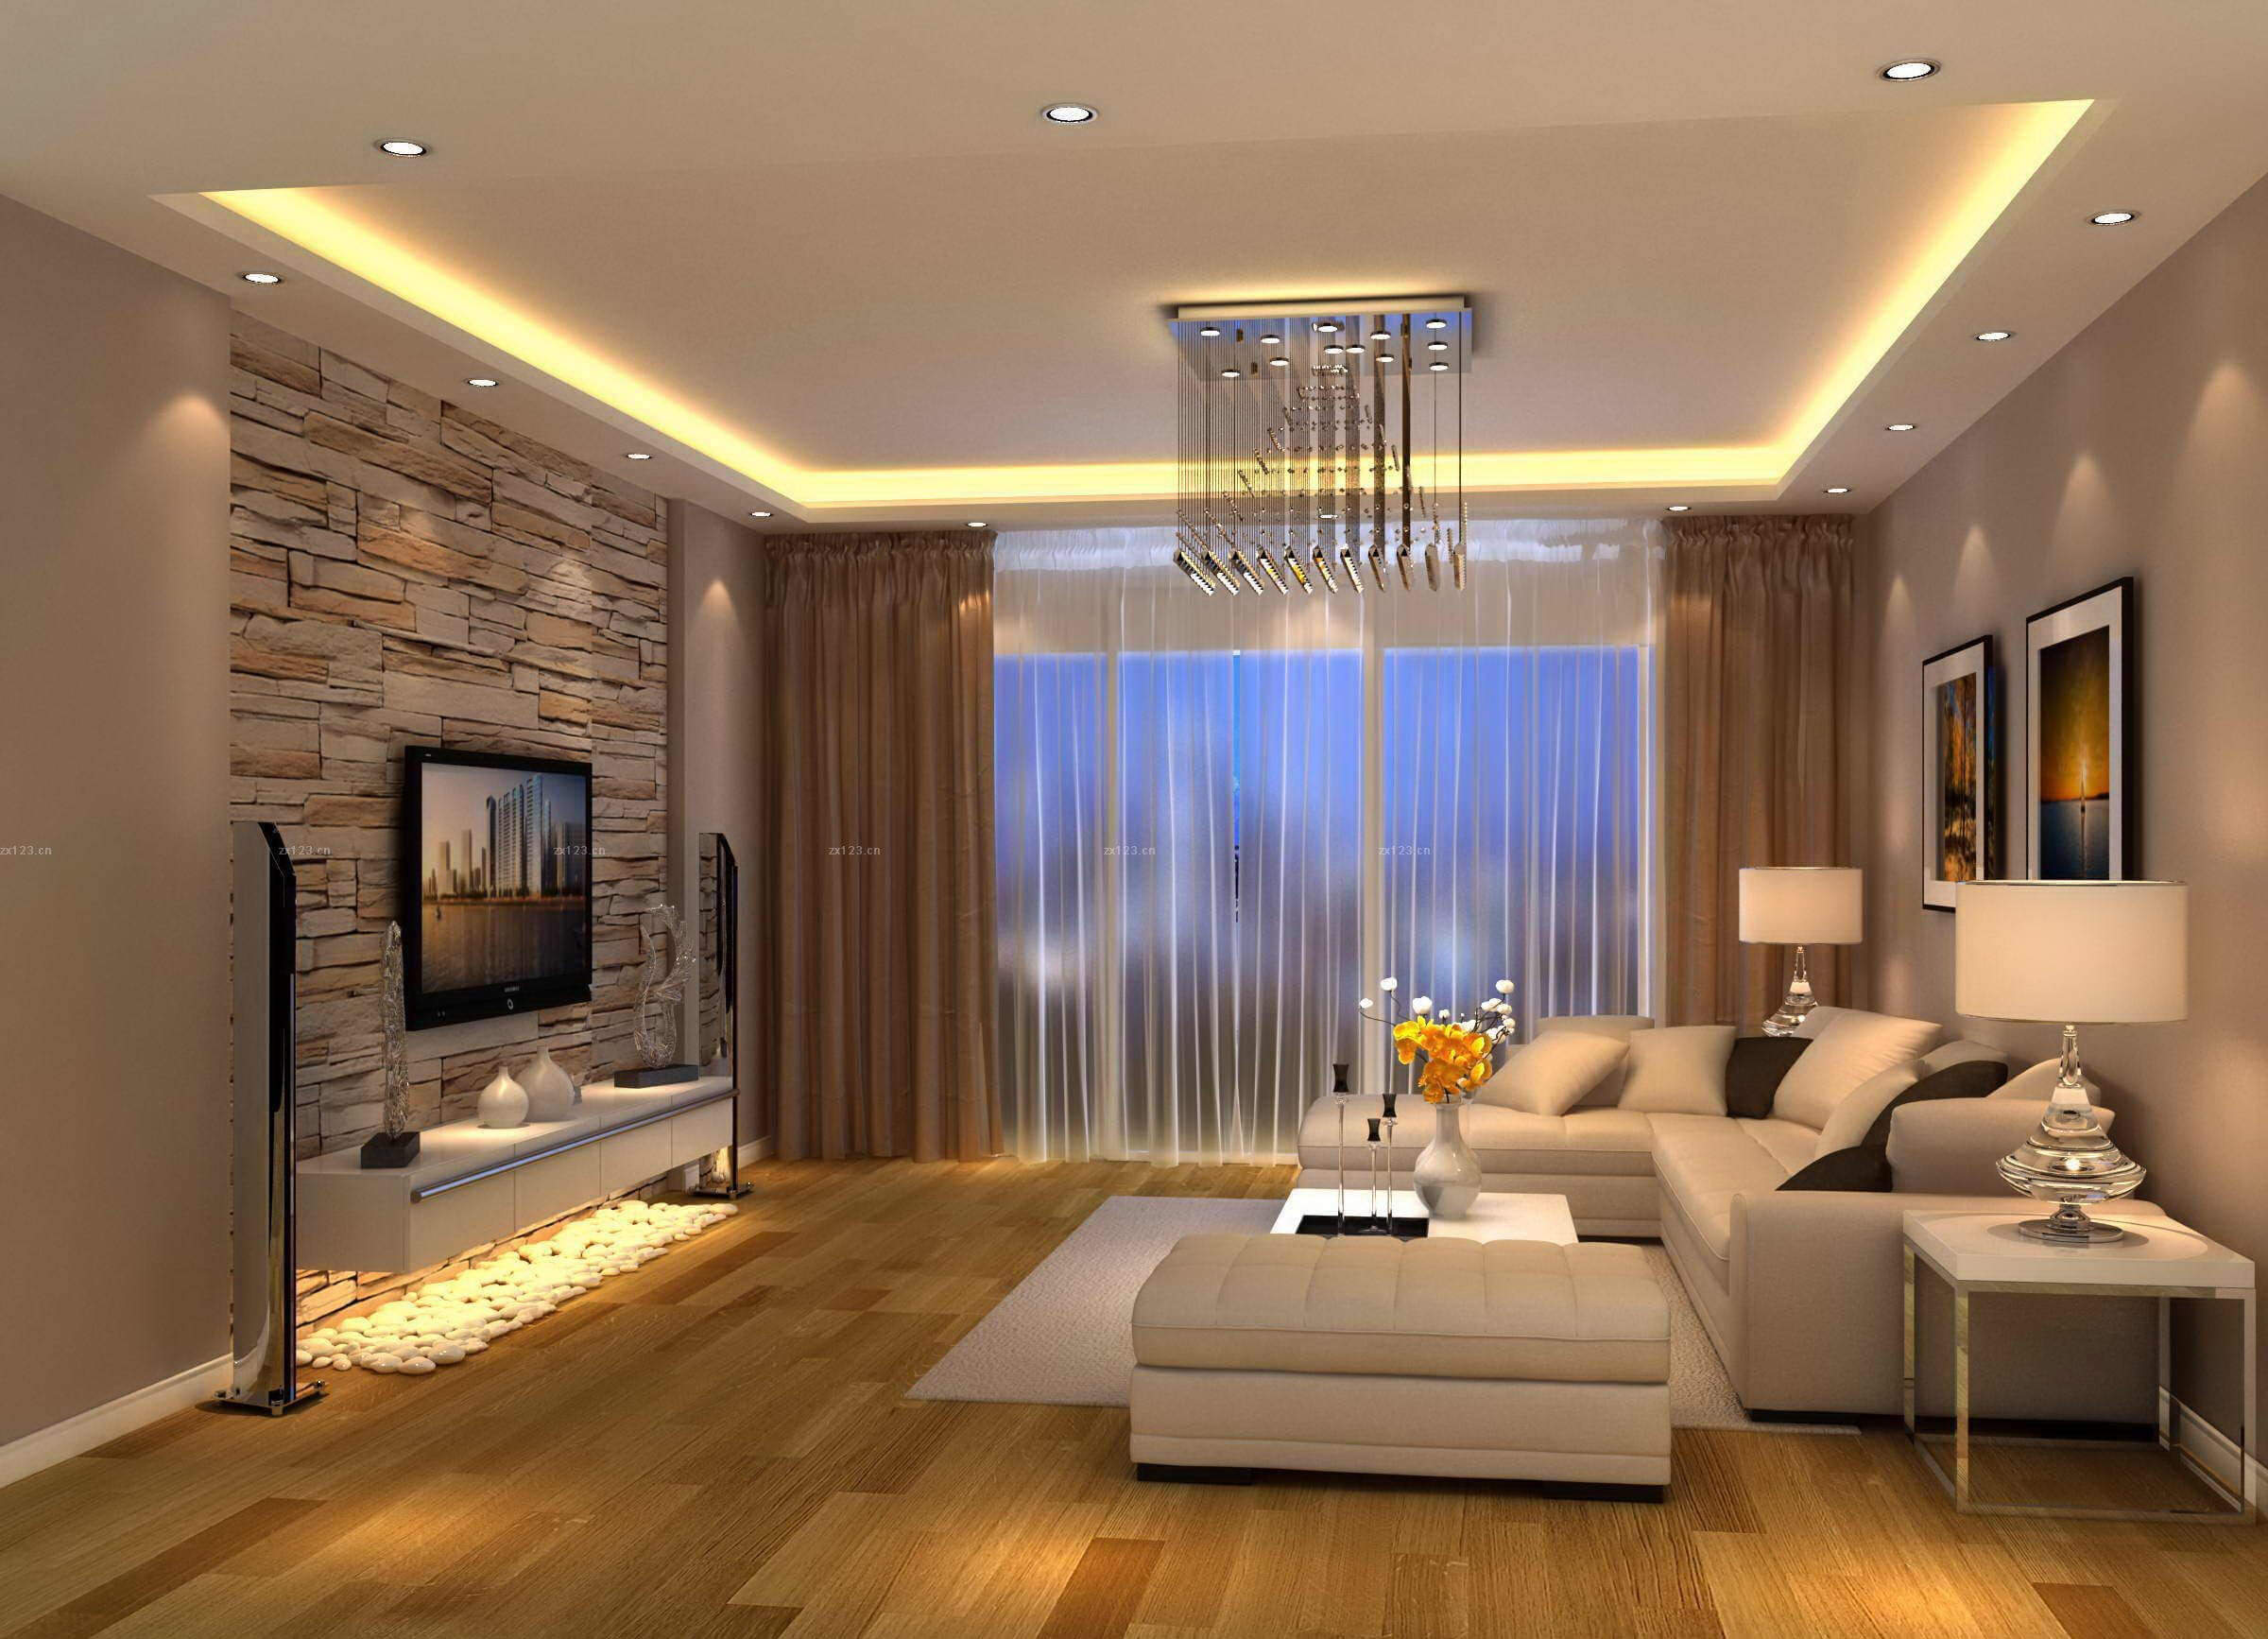 Living Room Lighting Design